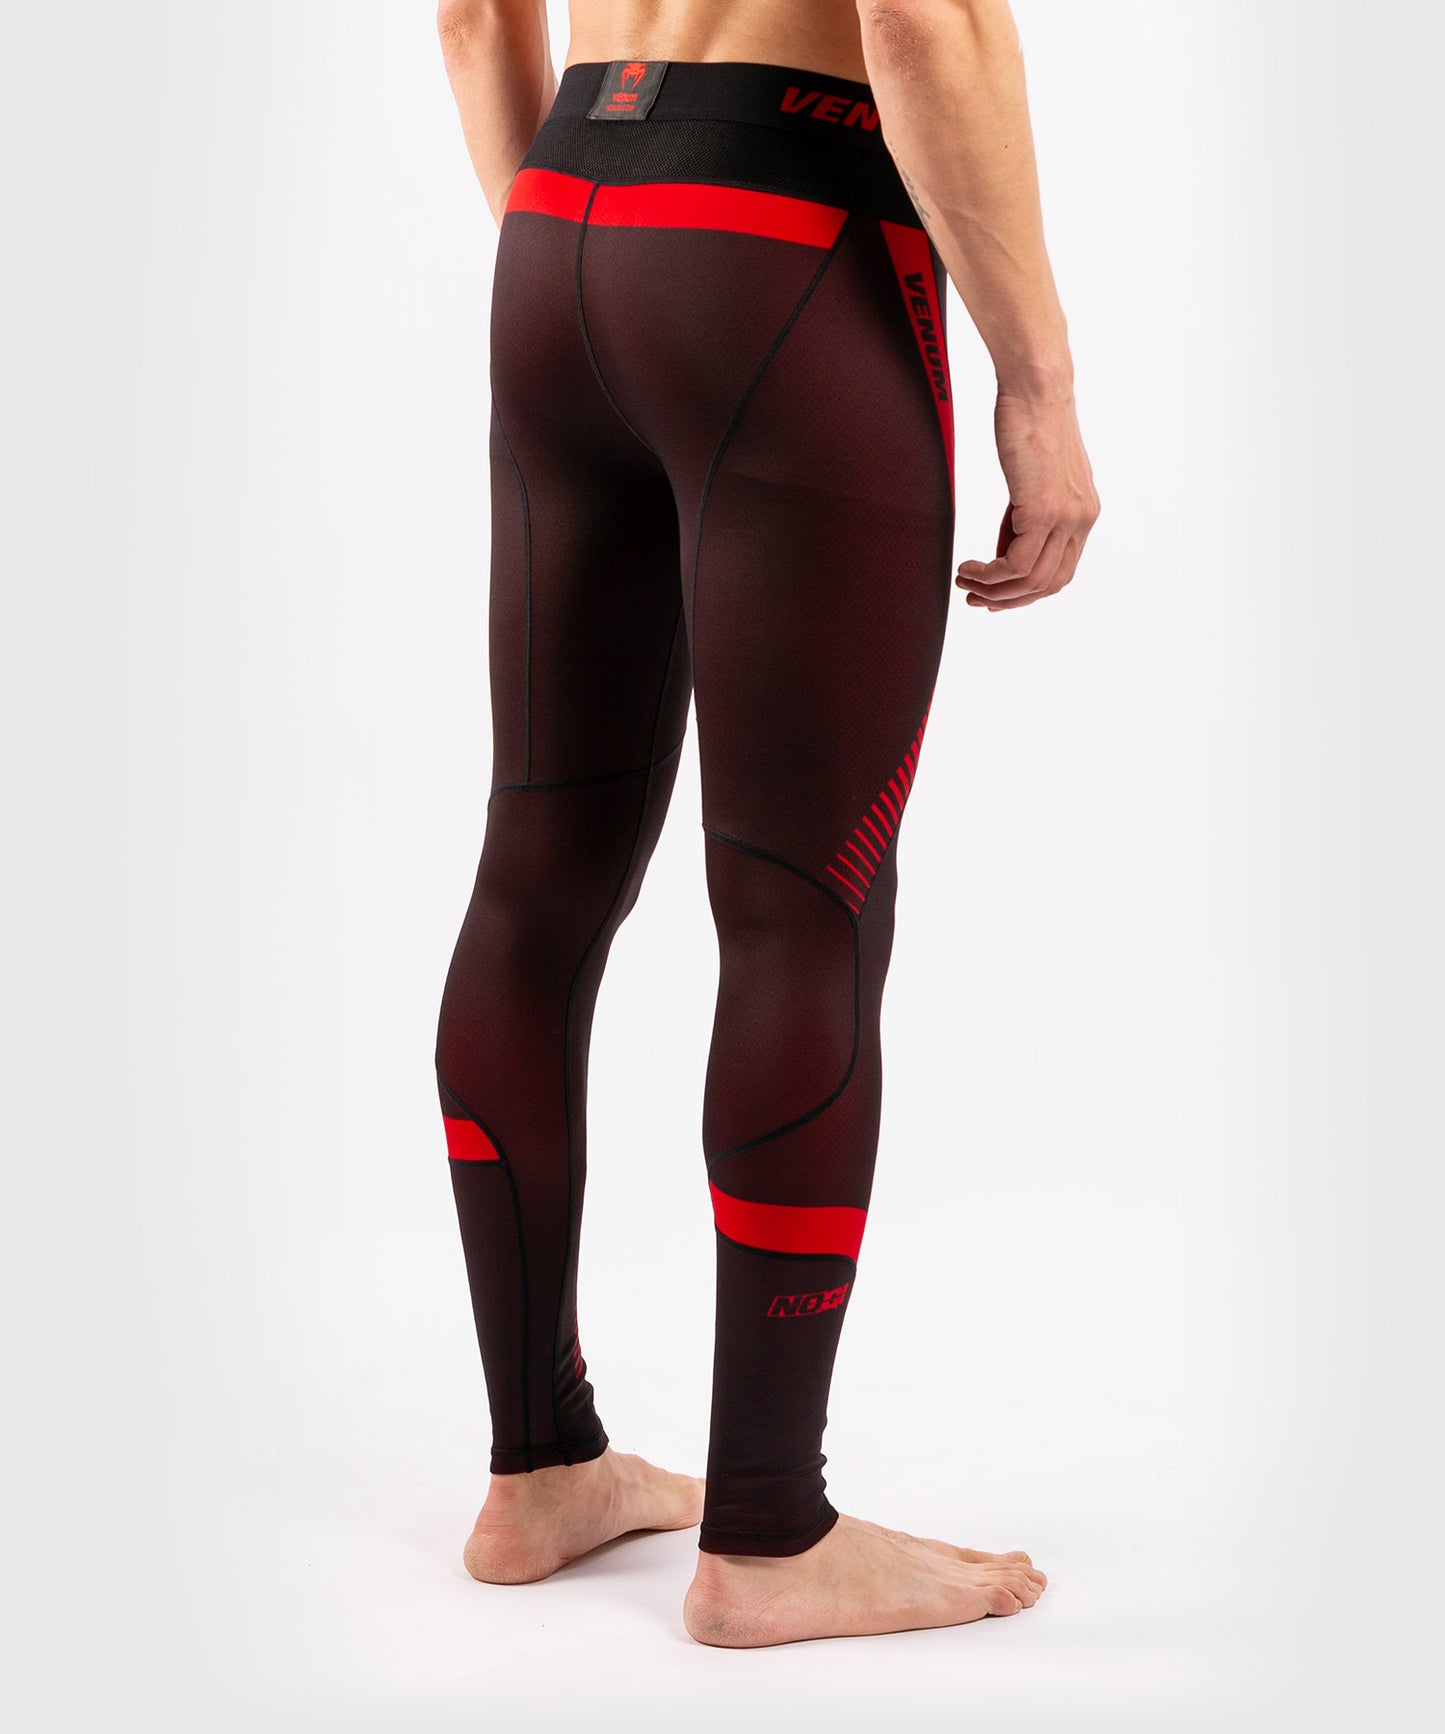 Pantalones de compresión Venum No Gi 3.0 - Negro/Rojo